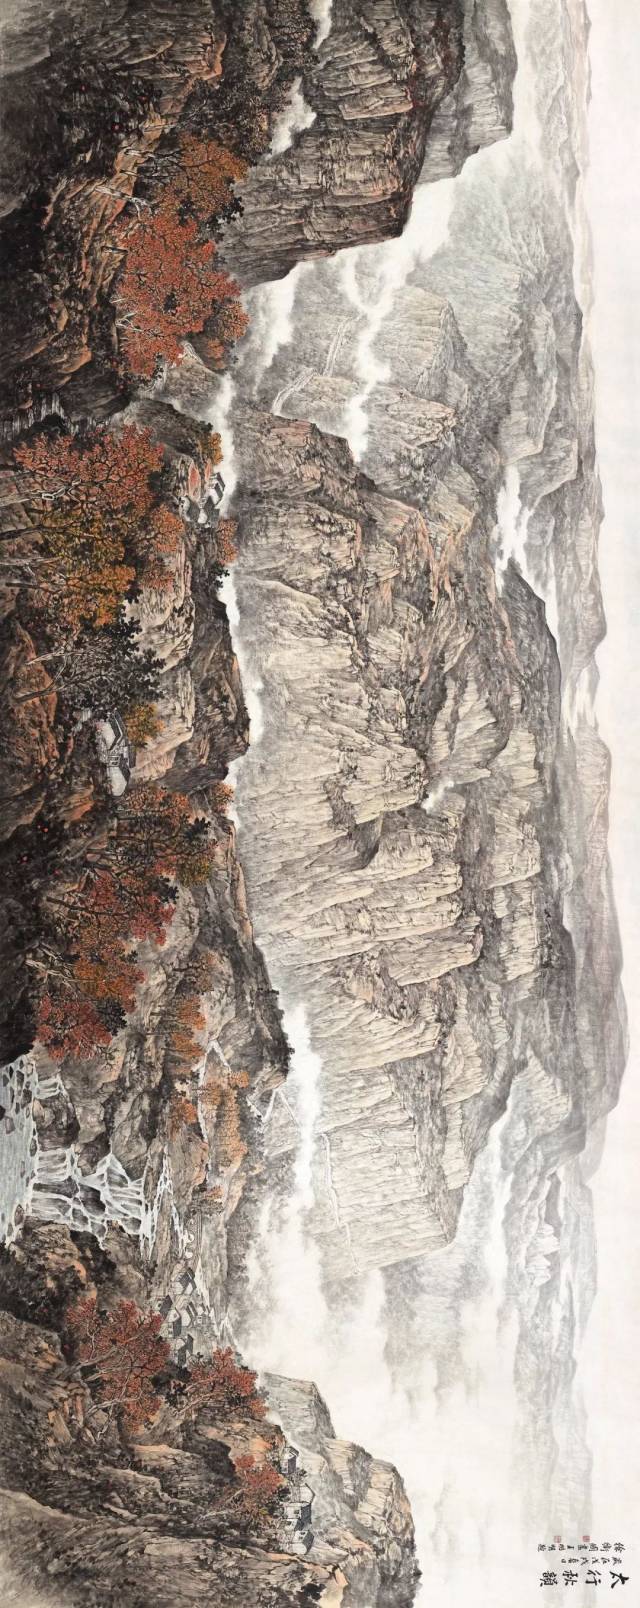 山外人间 出古入今的山水家园:徐卫国山水画作品在北京画院美术馆展出